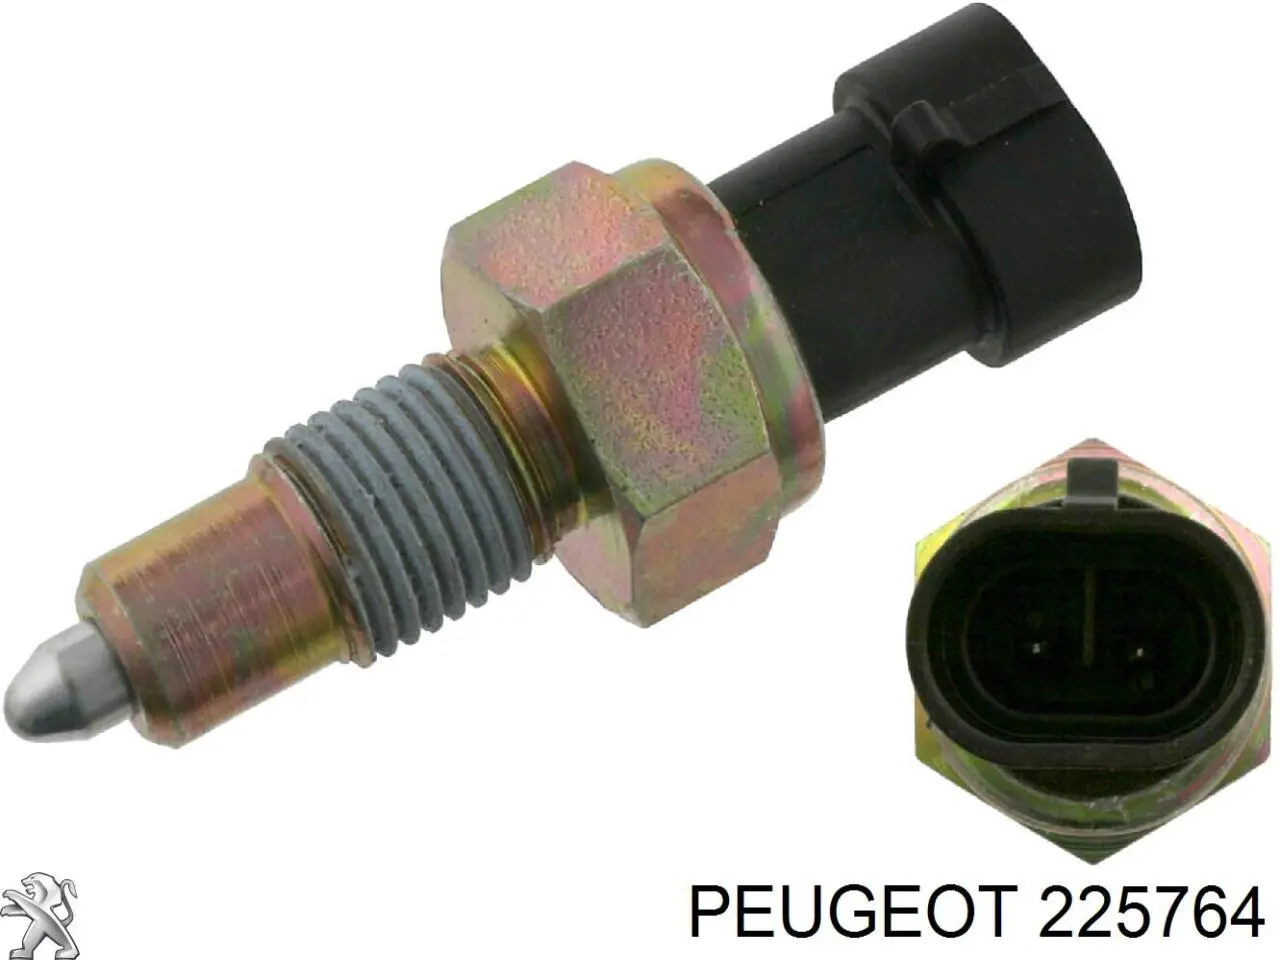 225764 Peugeot/Citroen sensor de marcha atrás